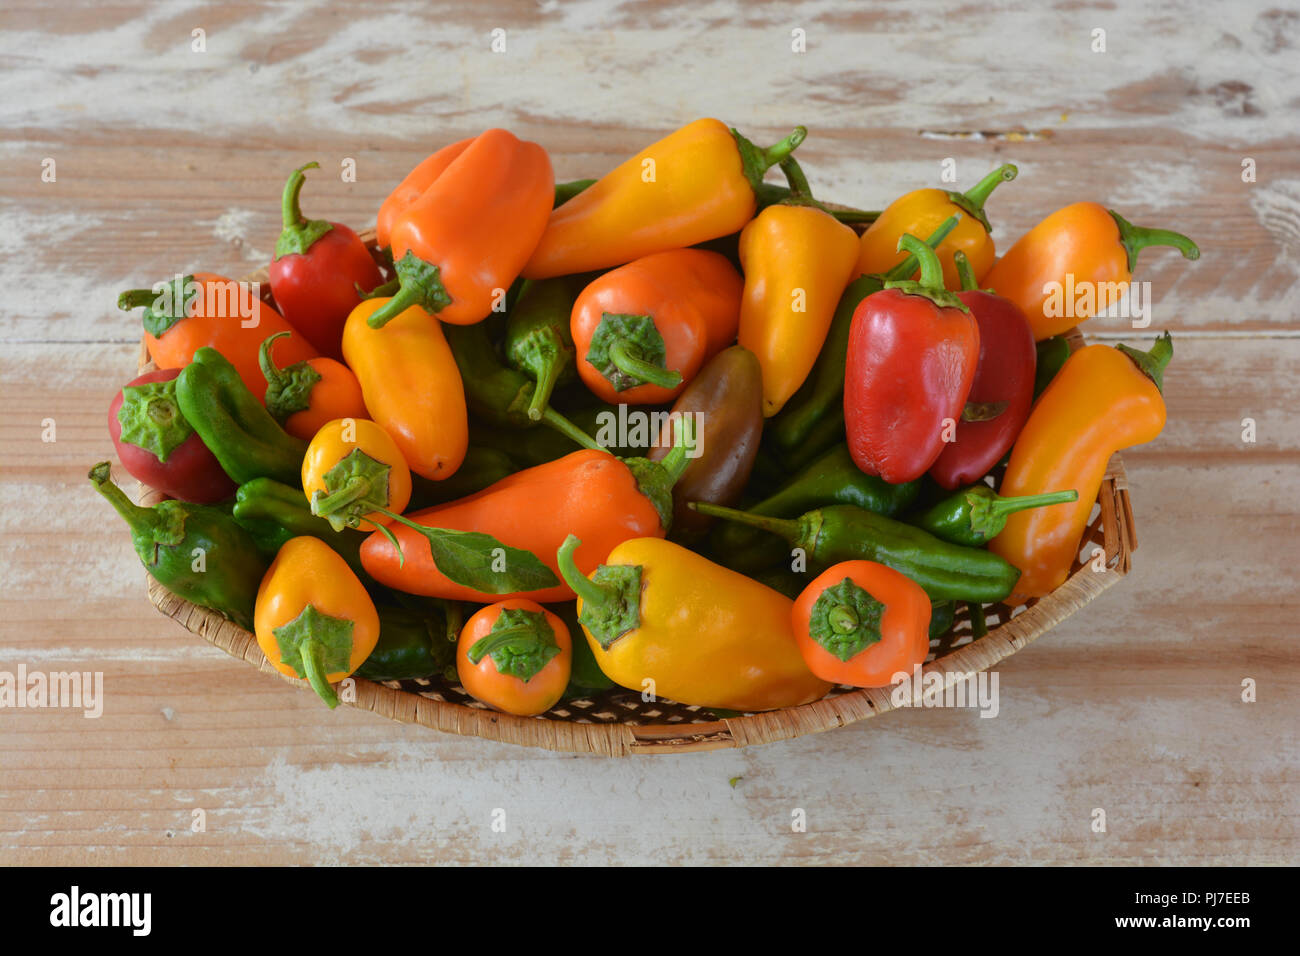 Korb voller frisch gepflückt home-grown organic Rot, Grün, Gelb und Orange Paprika auf einem Holztisch. Hohe Betrachtungswinkel Stockfoto